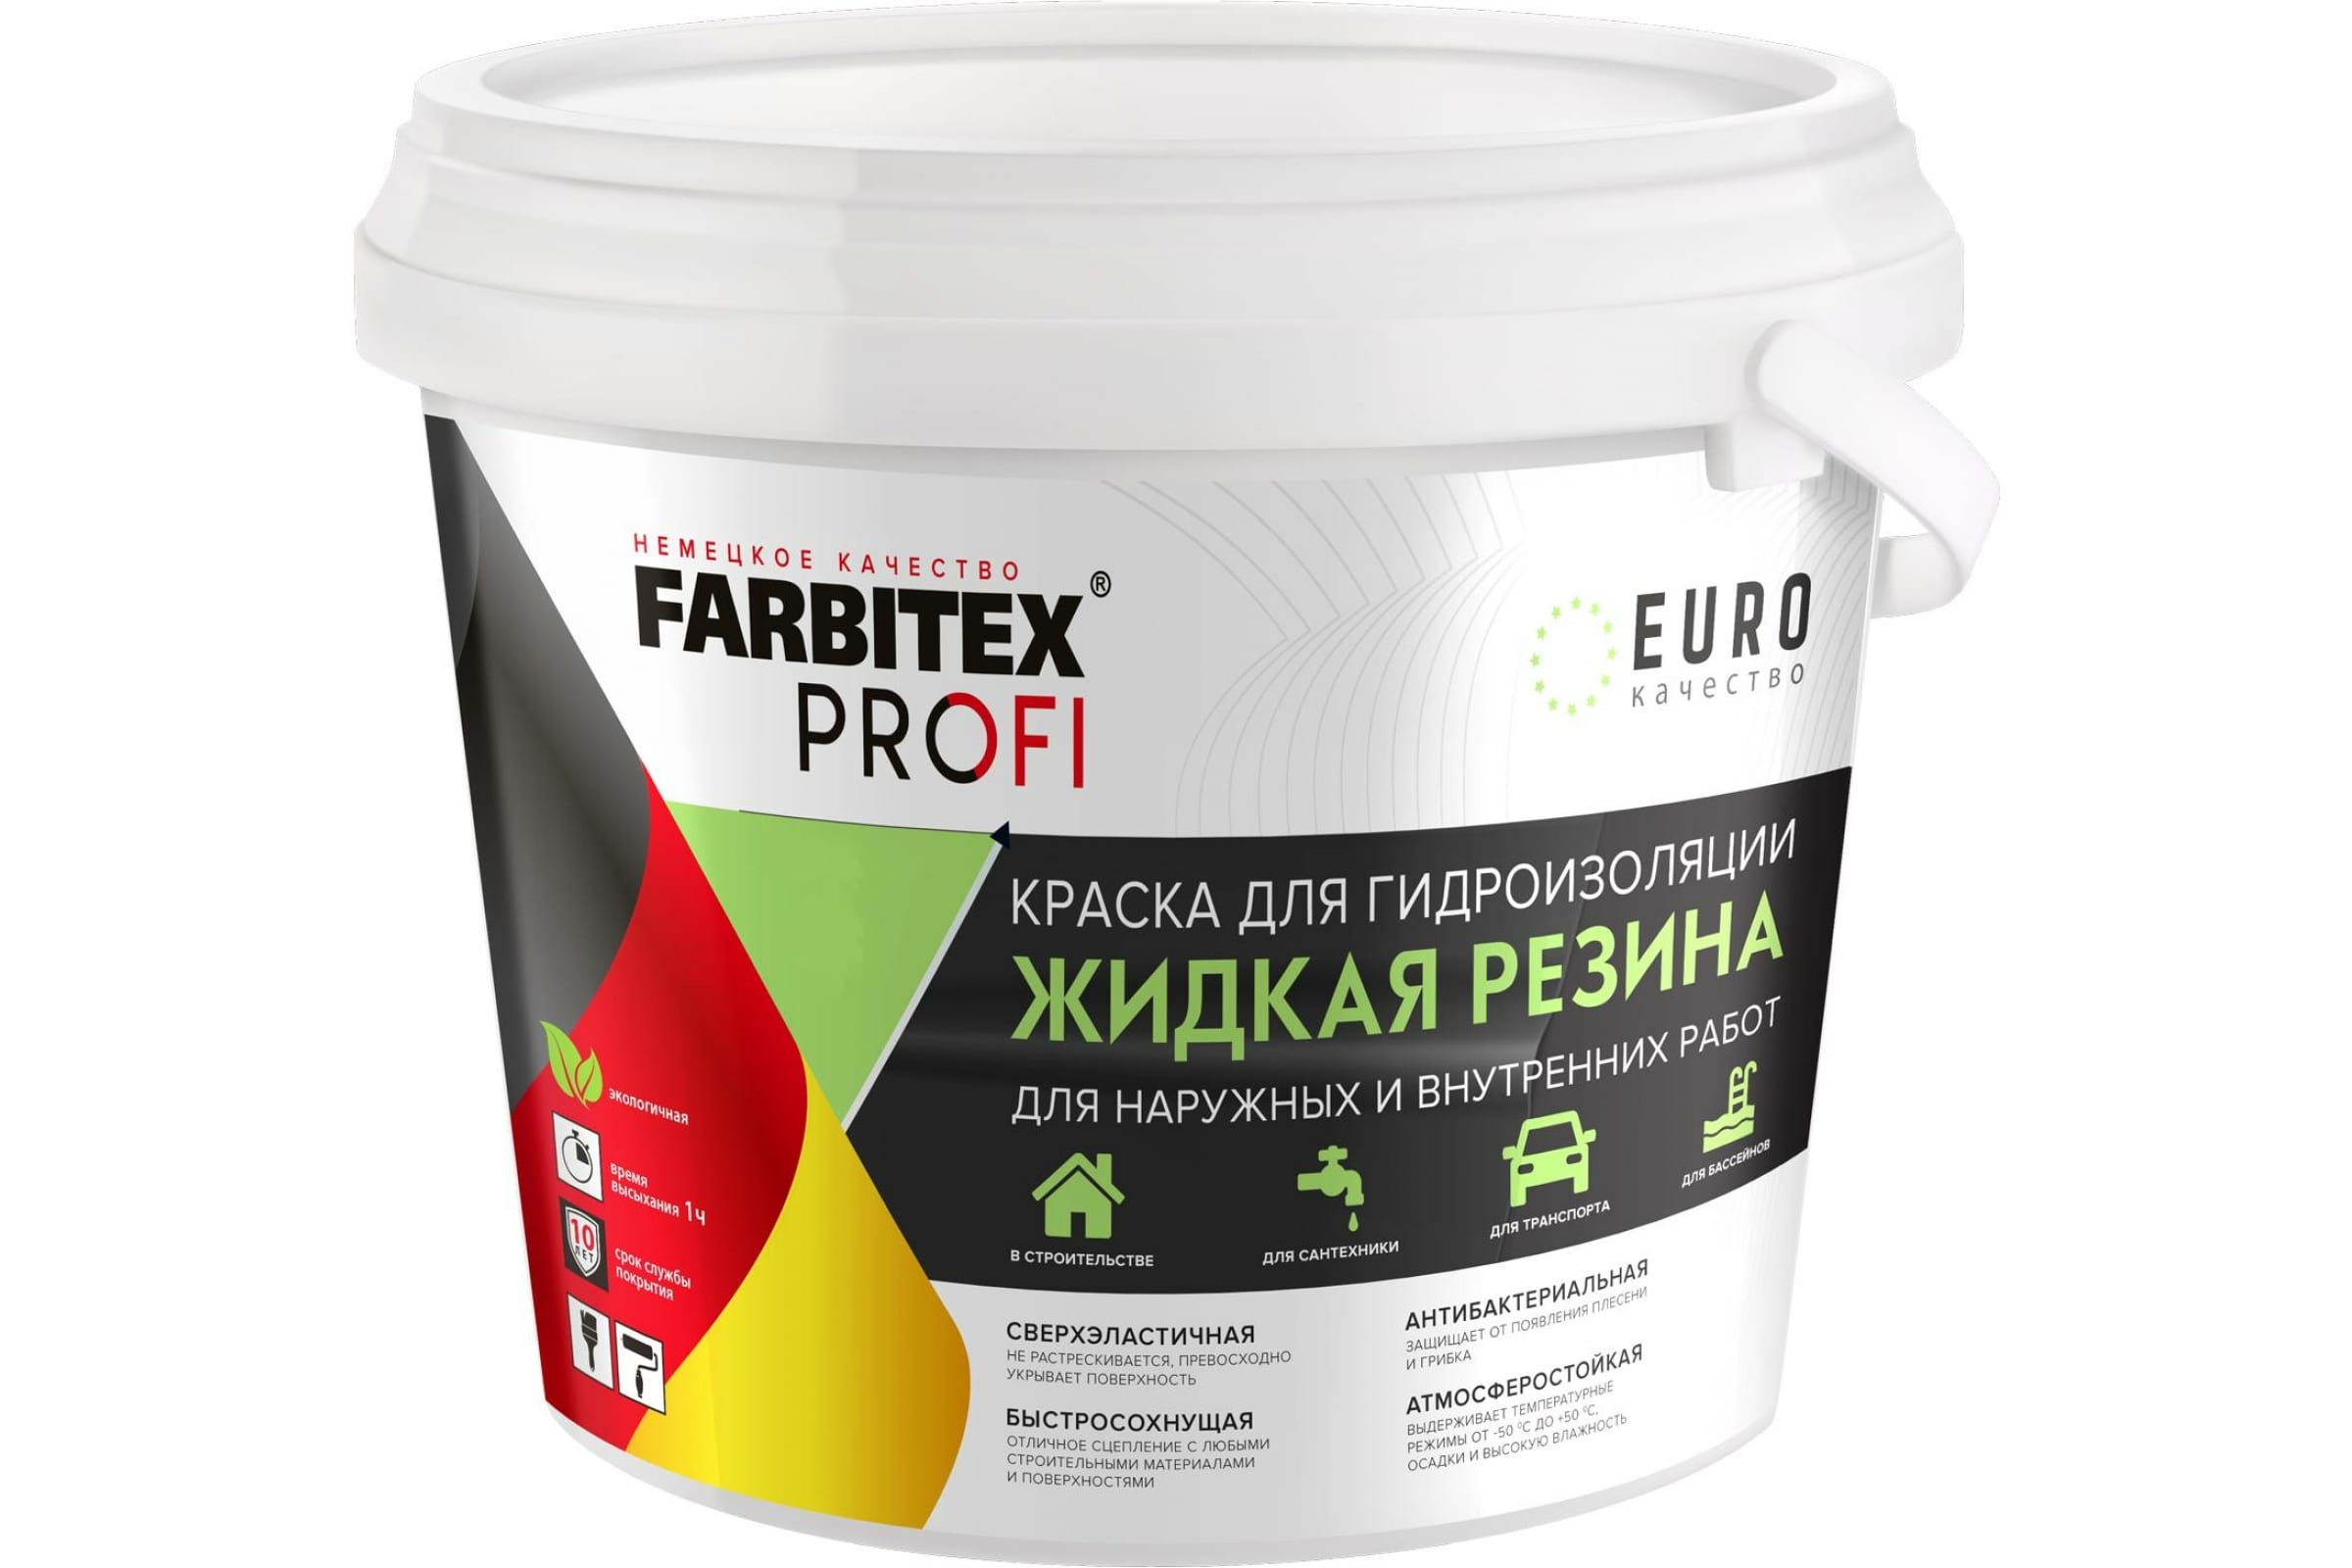 FARBITEX Краска акриловая для гидроизоляции Жидкая резина серый (1 кг) 4300008708 акриловая краска для гидроизоляции farbitex жидкая резина серый 1 кг 4300008708